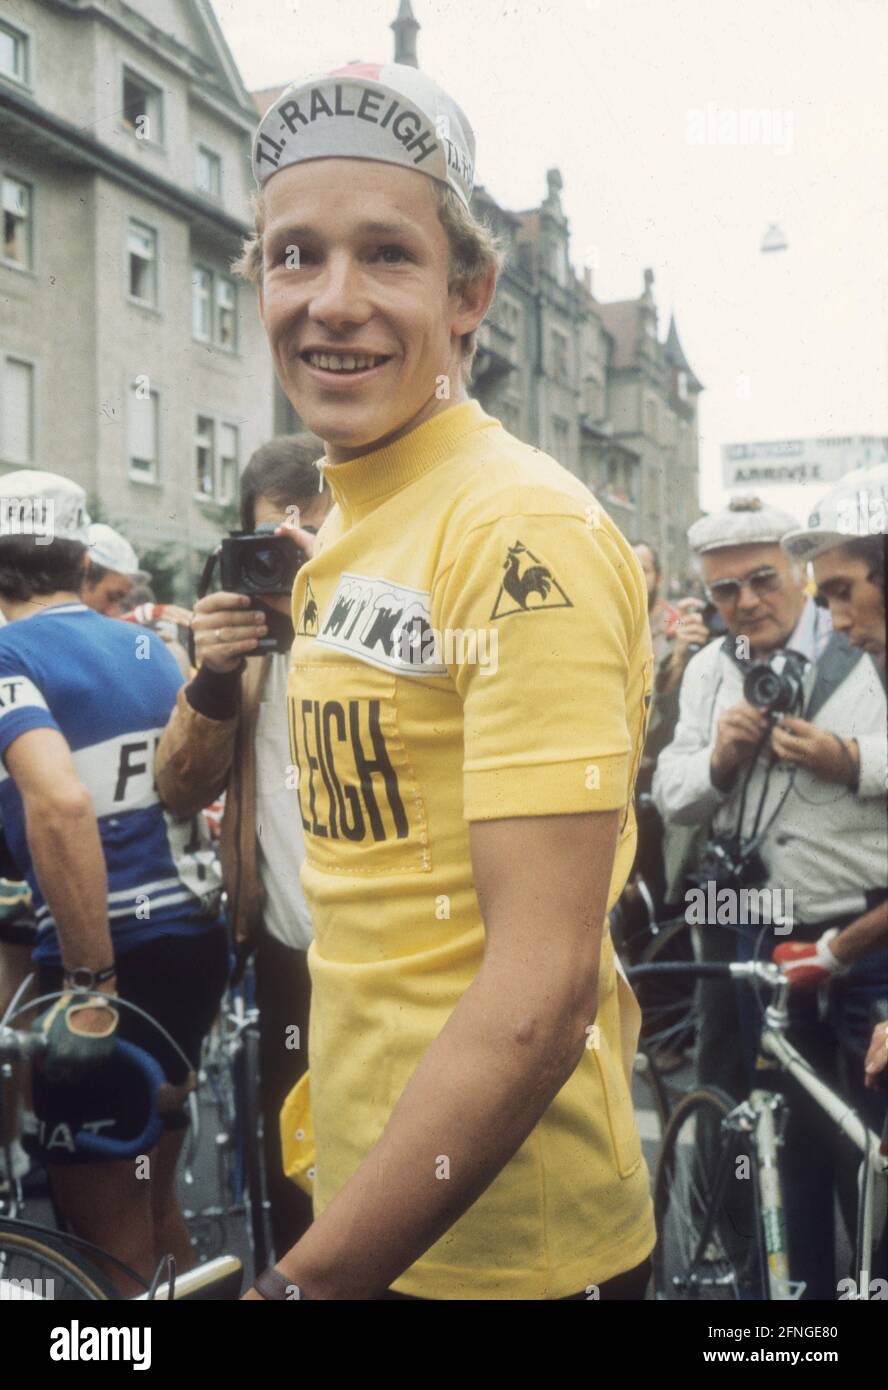 Tour de France 1977. Didi Thurau (Germania) dopo la tredicesima tappa di Friburgo in Breisgau, indossa la maglia gialla. 14.07.1977. [traduzione automatica] Foto Stock